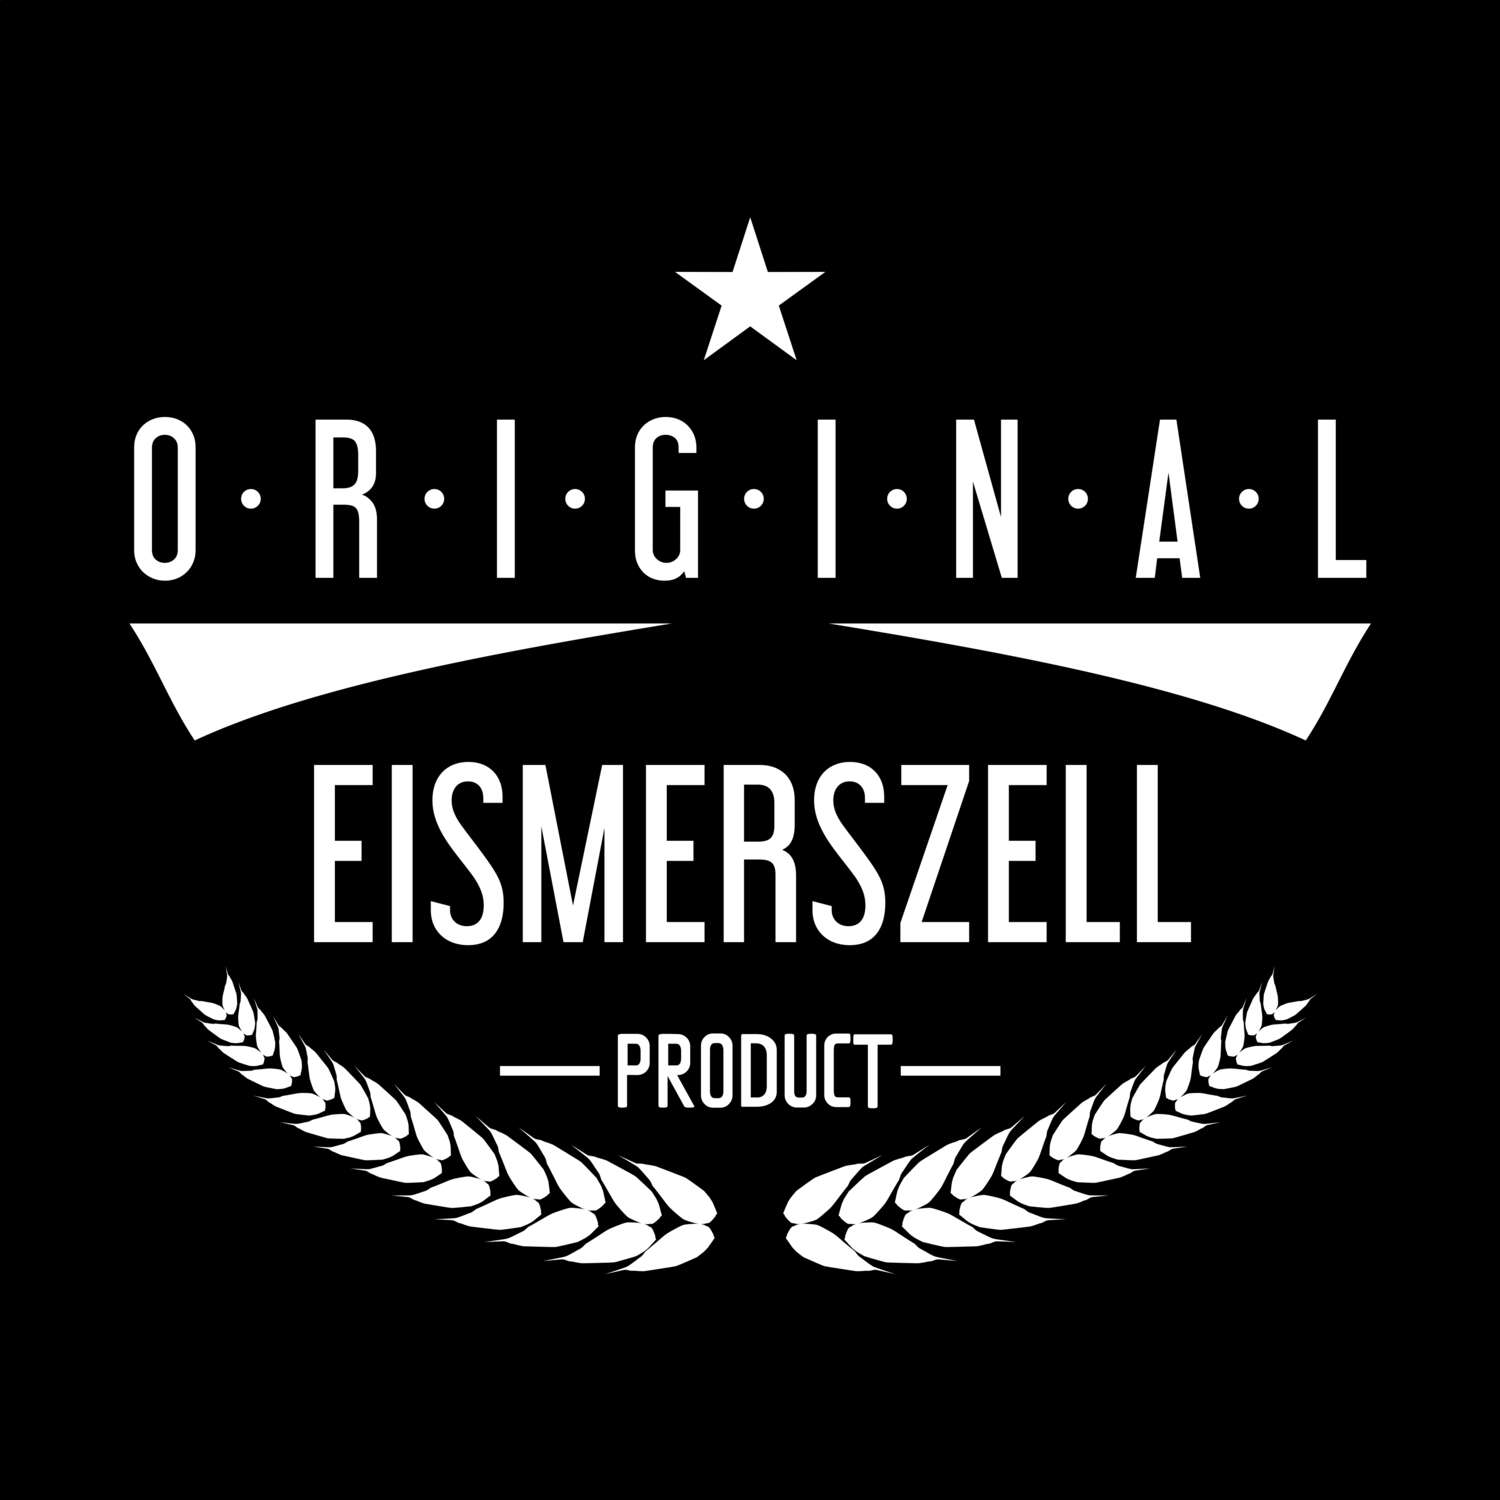 Eismerszell T-Shirt »Original Product«